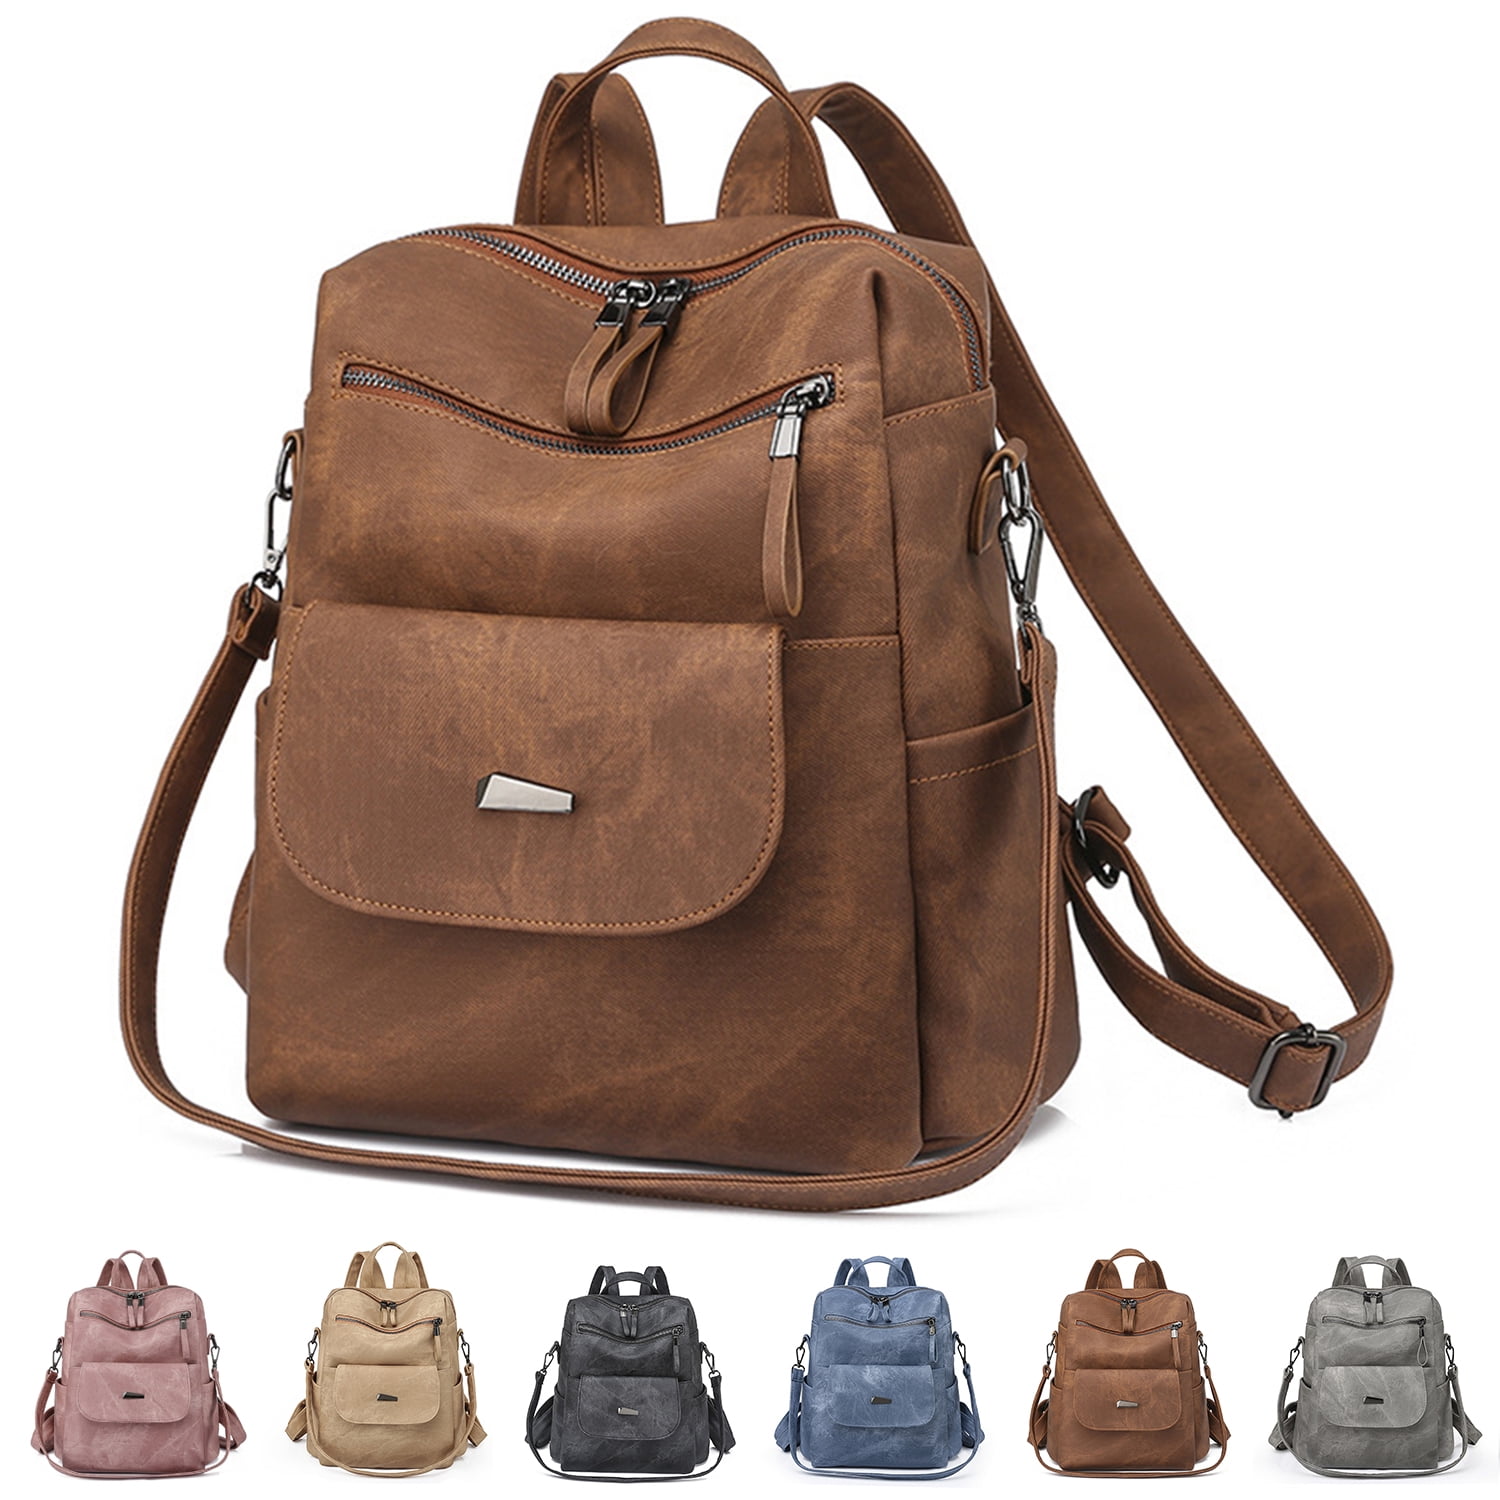 Cheruty Backpack Purse for Women Fashion Leather Backpack Designer Travel  Large Ladies Shoulder Bags Black - Walmart.com